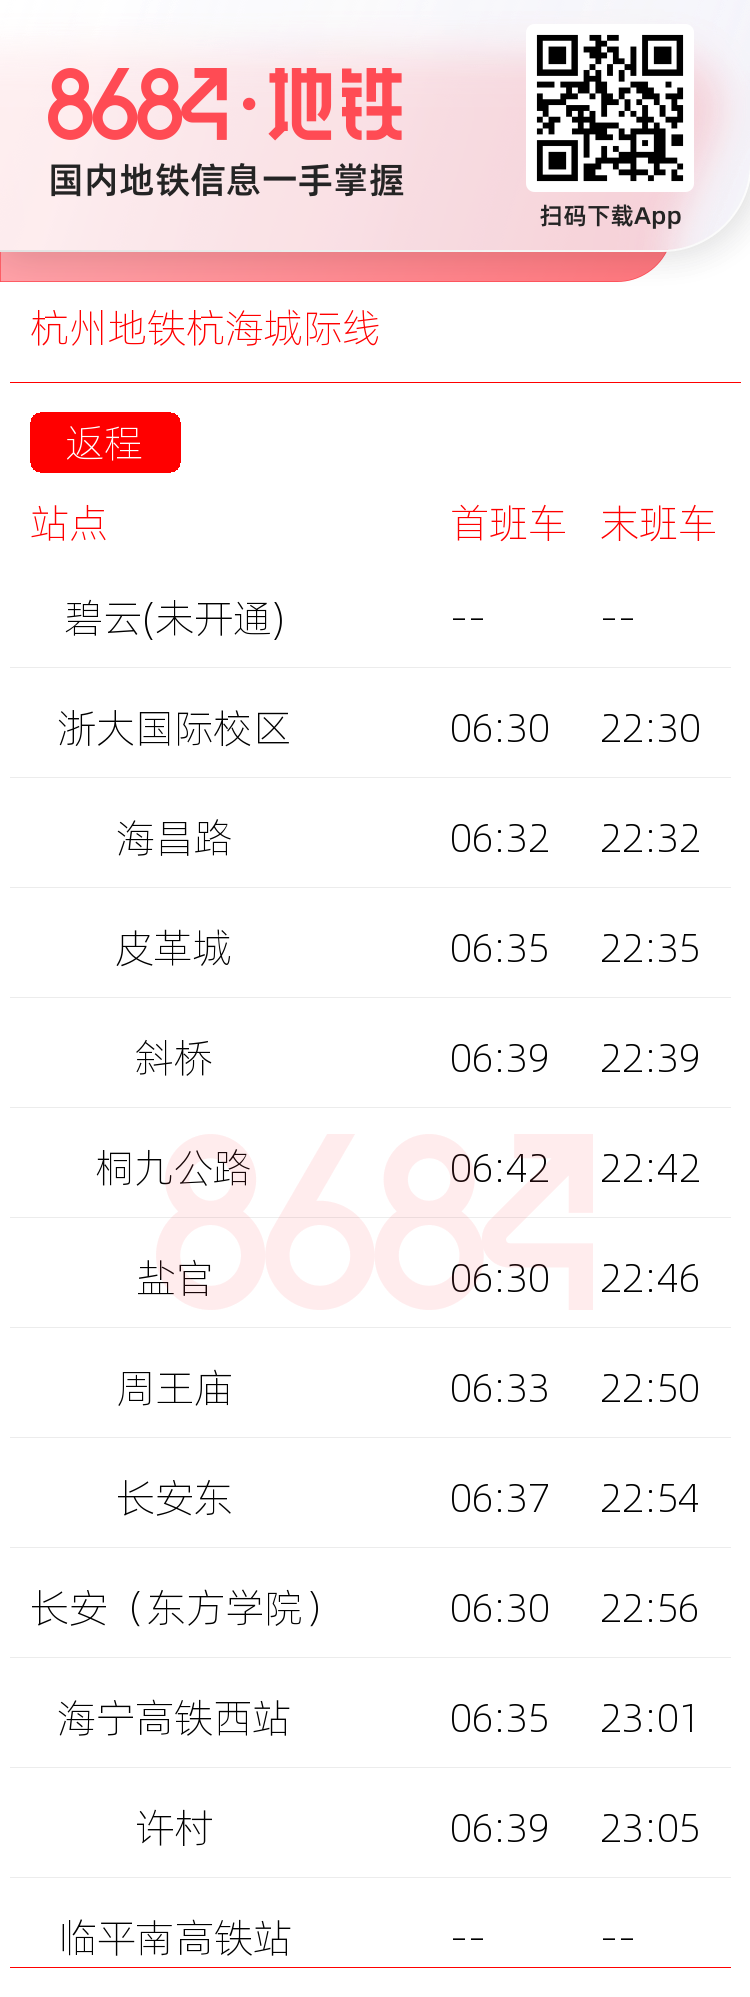 杭州地铁杭海城际线运营时间表